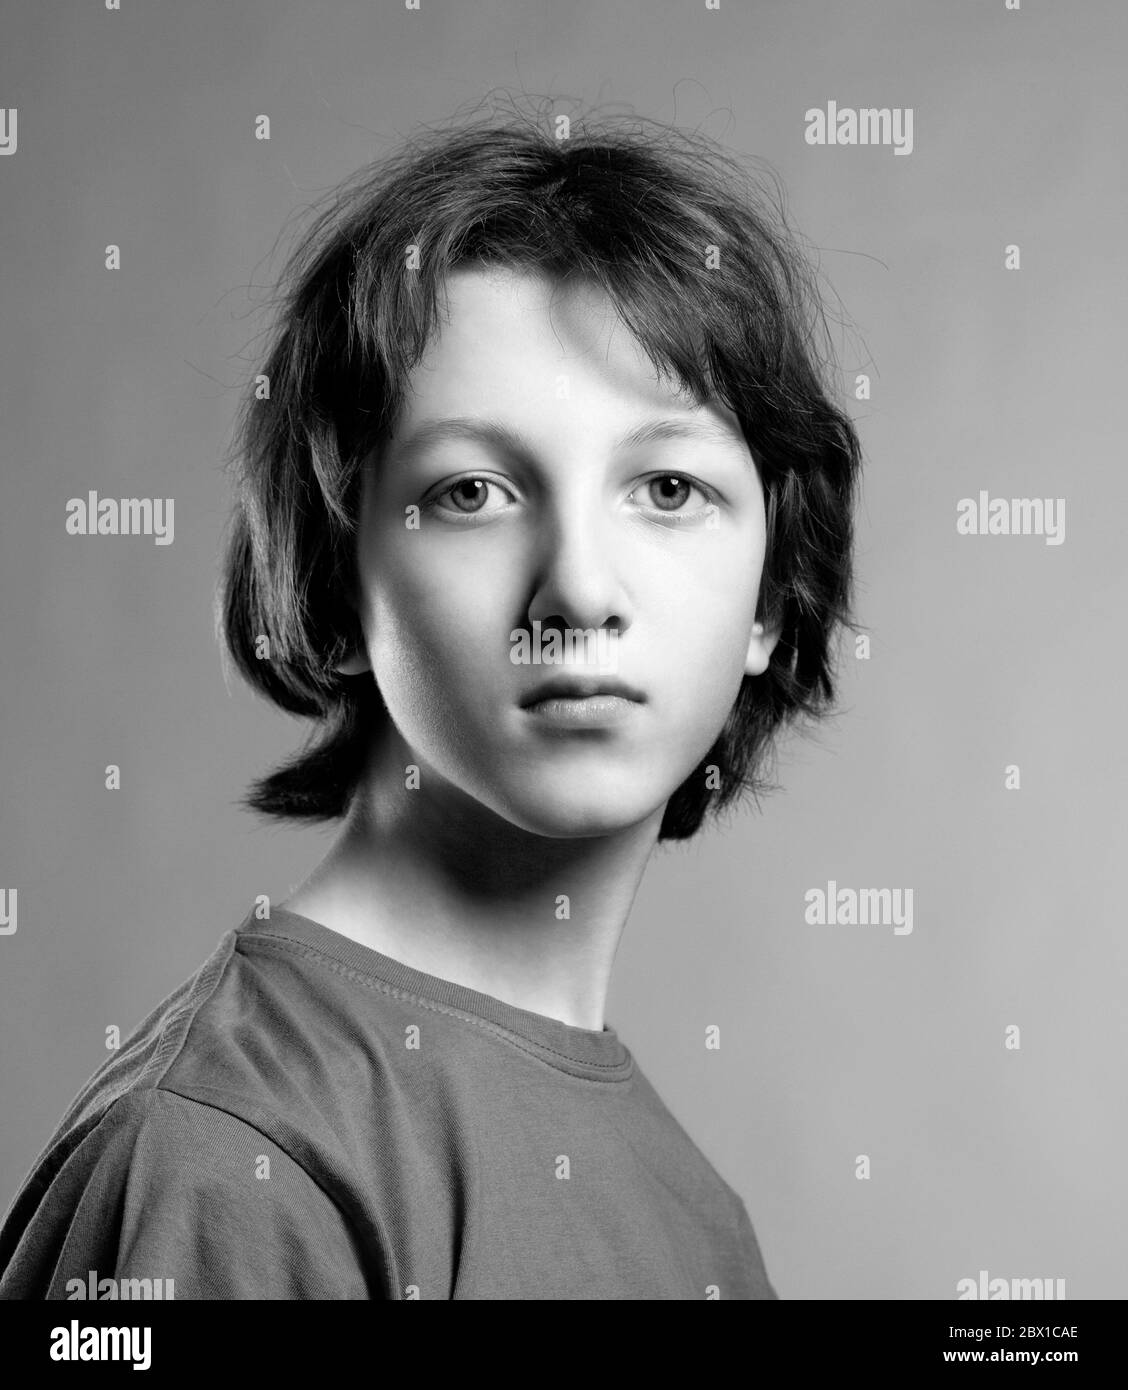 Ritratto di un ragazzo teenage. Foto Stock